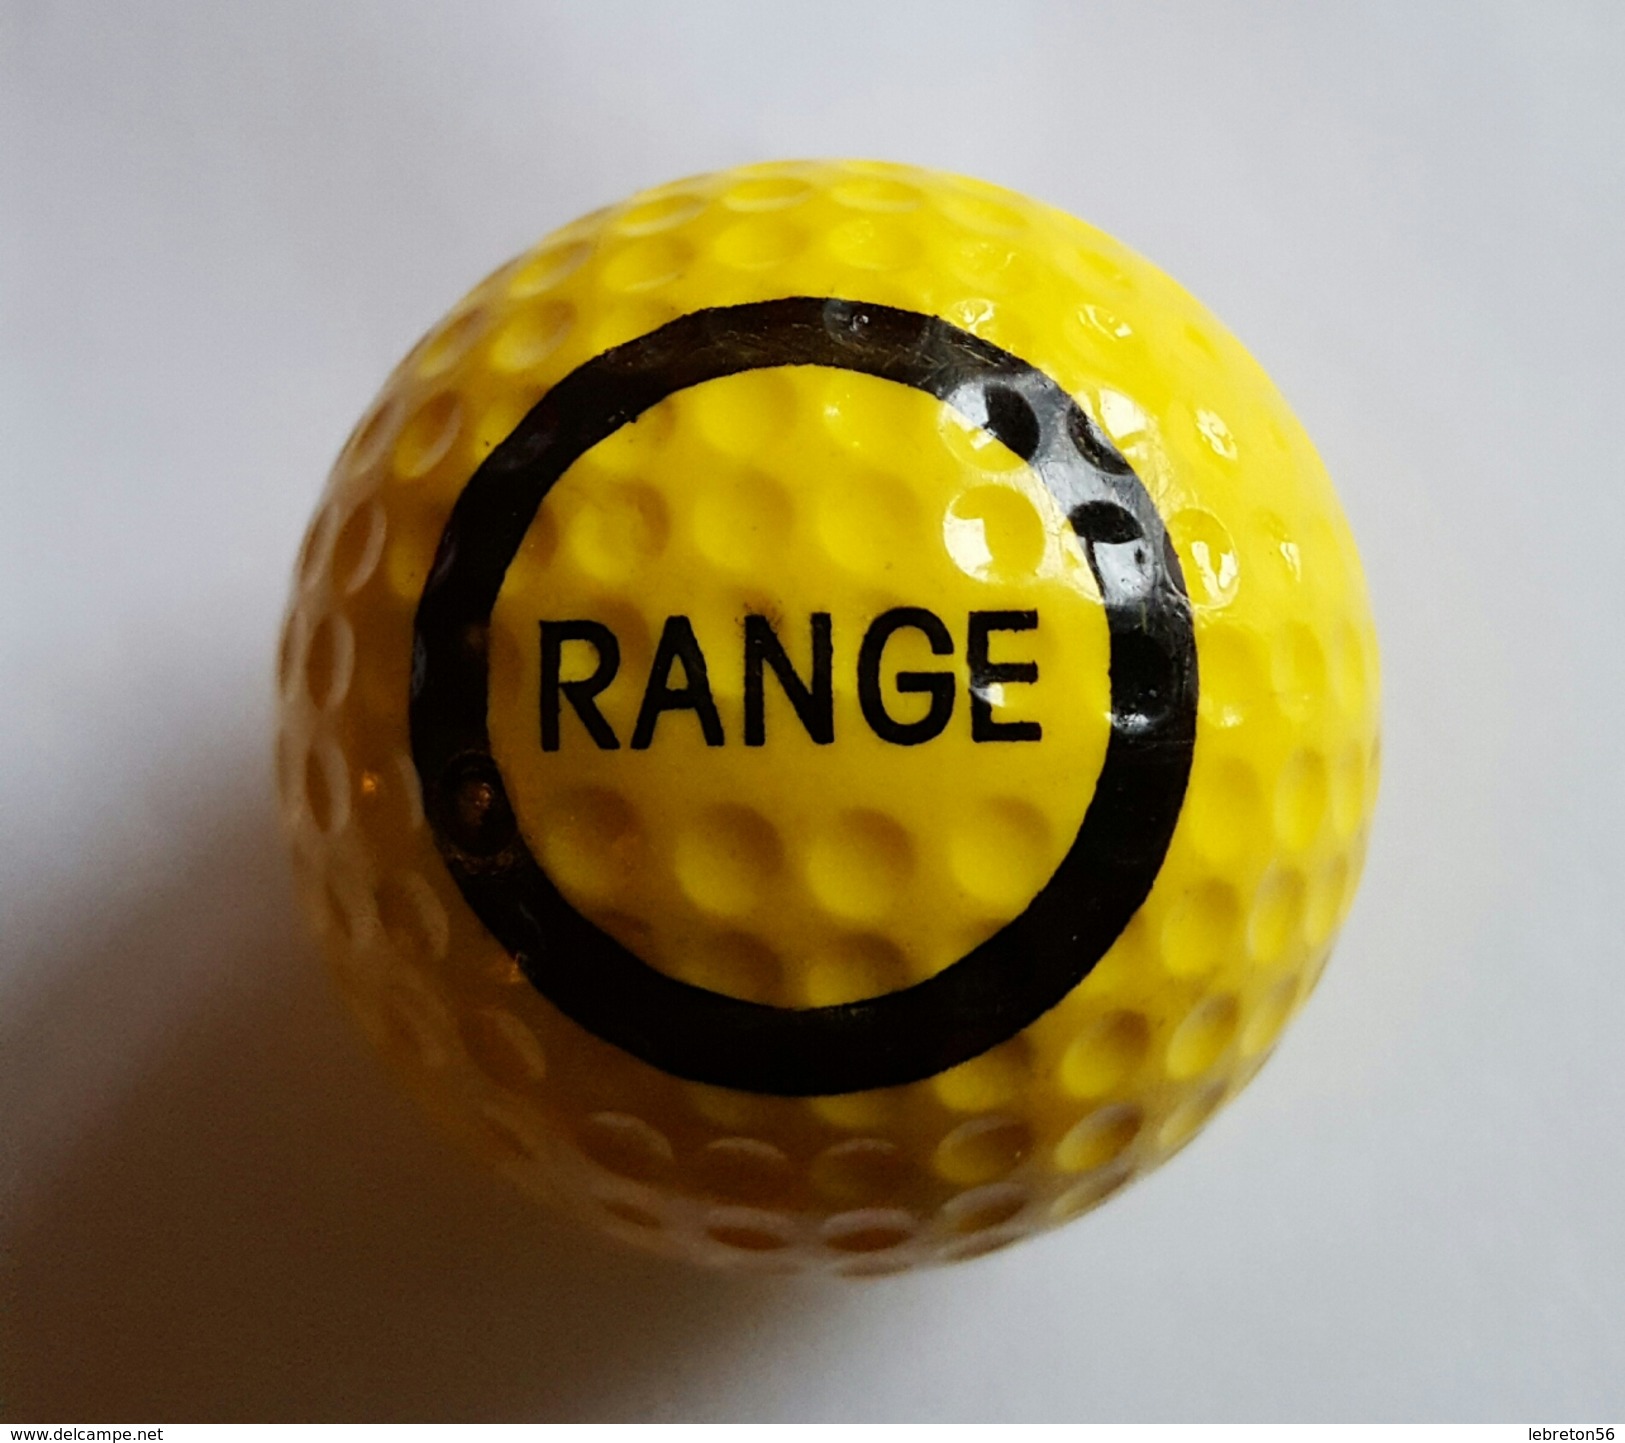 Joli 1 Balle De Golf Collection RANGE - Abbigliamento, Souvenirs & Varie